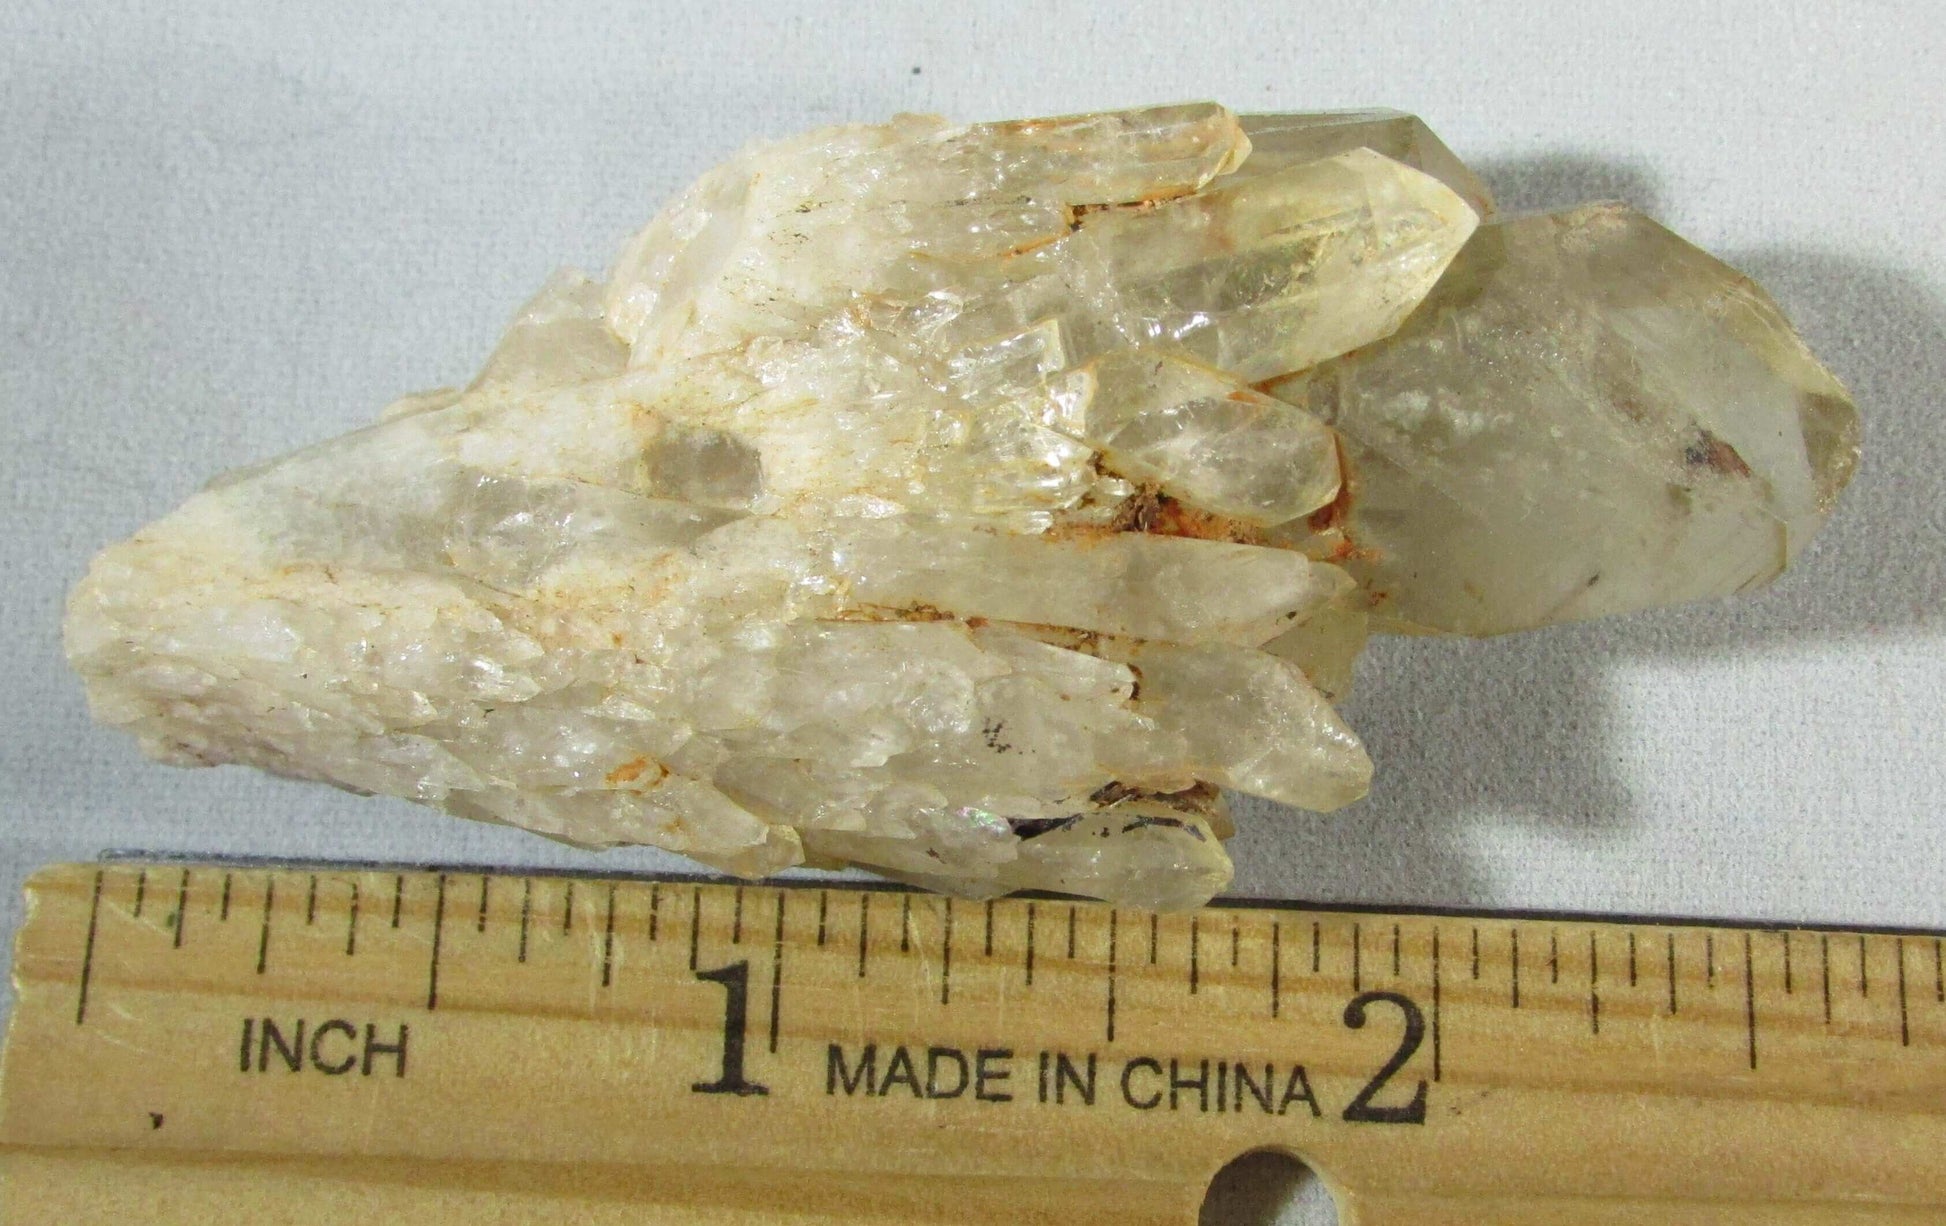 genuine kundalini citrine ethically sourced zimbabwe crystal